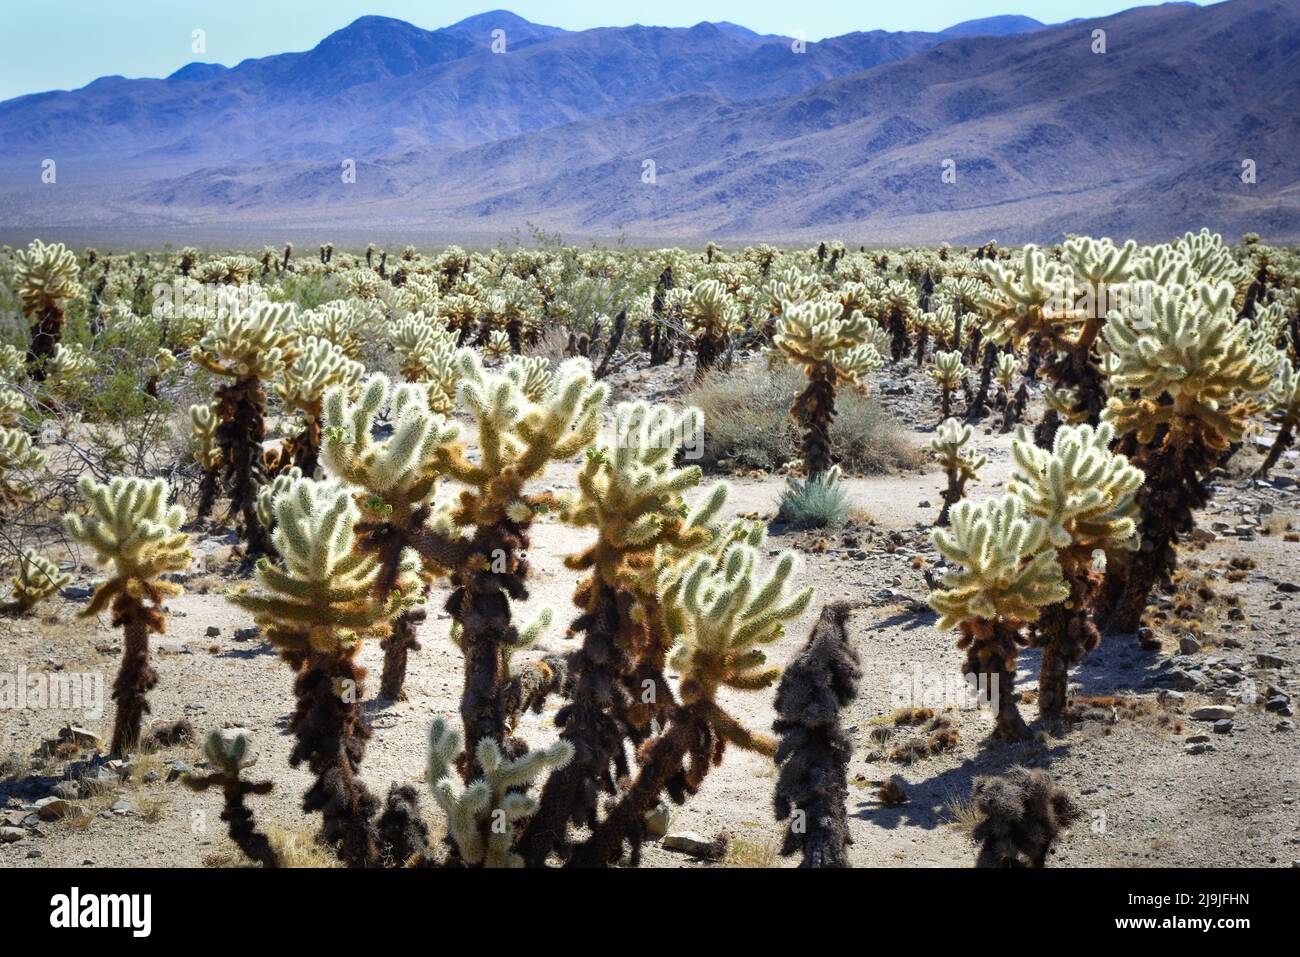 El exclusivo jardín de cactus Cholla en el Parque Nacional Joshua Tree en el desierto de Mojave, CA Foto de stock